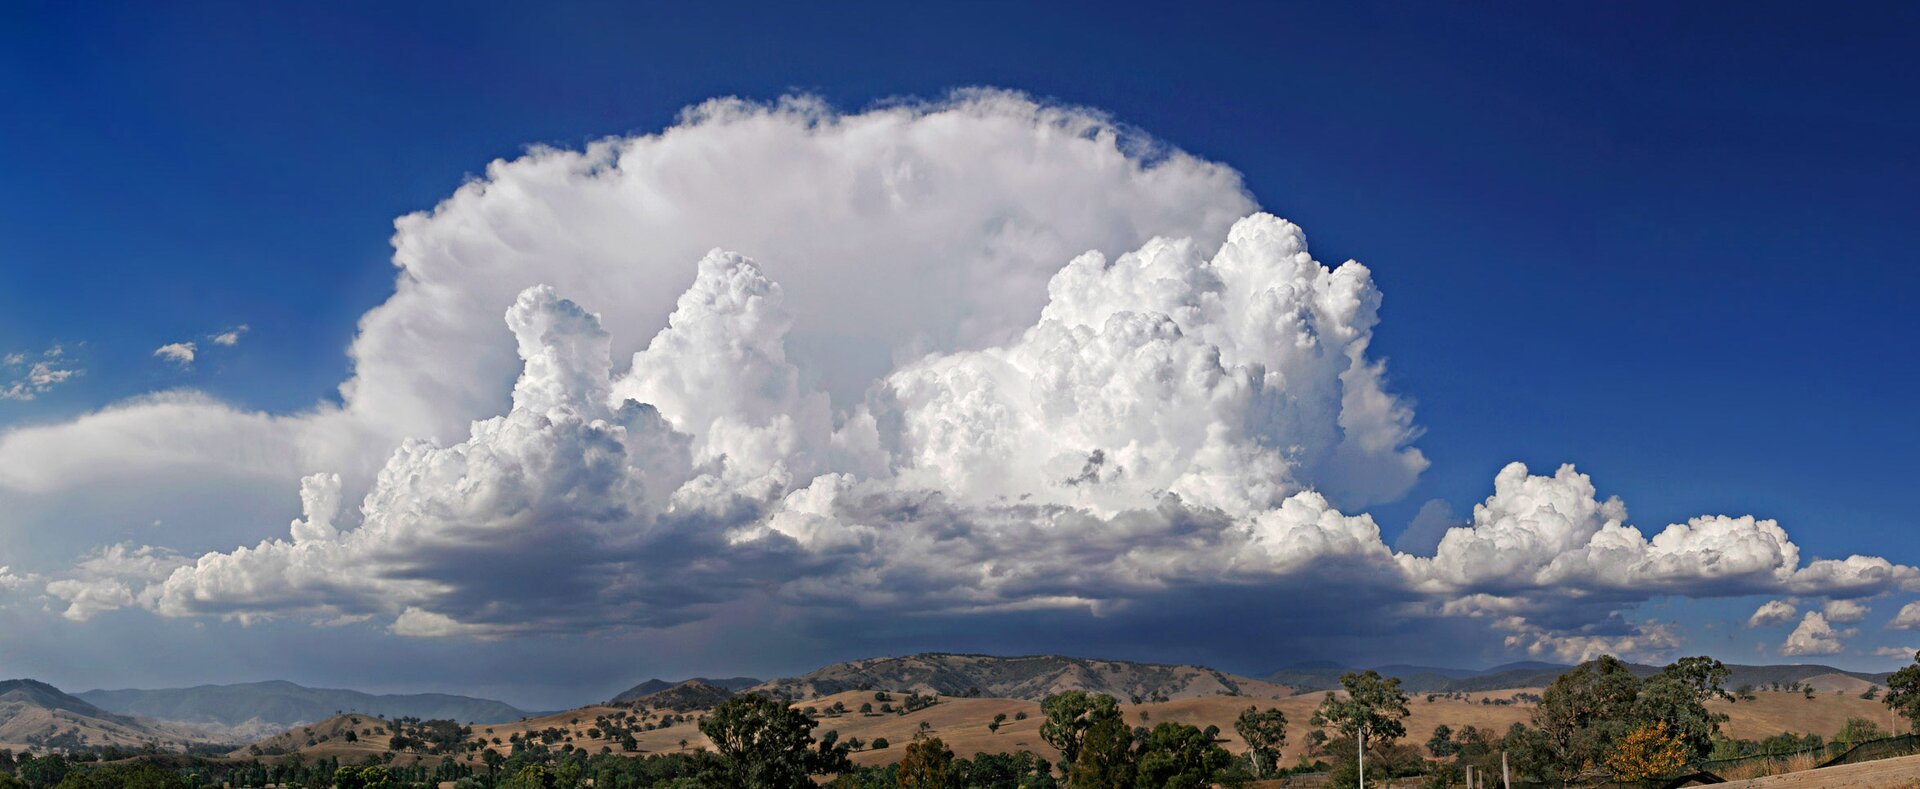 Ilustracja przedstawia chmury kłębiasto-deszczowe - cumulonimbusy. Są to chmury kłębiaste deszczowe – gęste chmury rozbudowane pionowo na wysokość kilku lub kilkunastu kilometrów. Na zdjęciu chmury te unoszą się nad pagórkami i niskimi górami. 